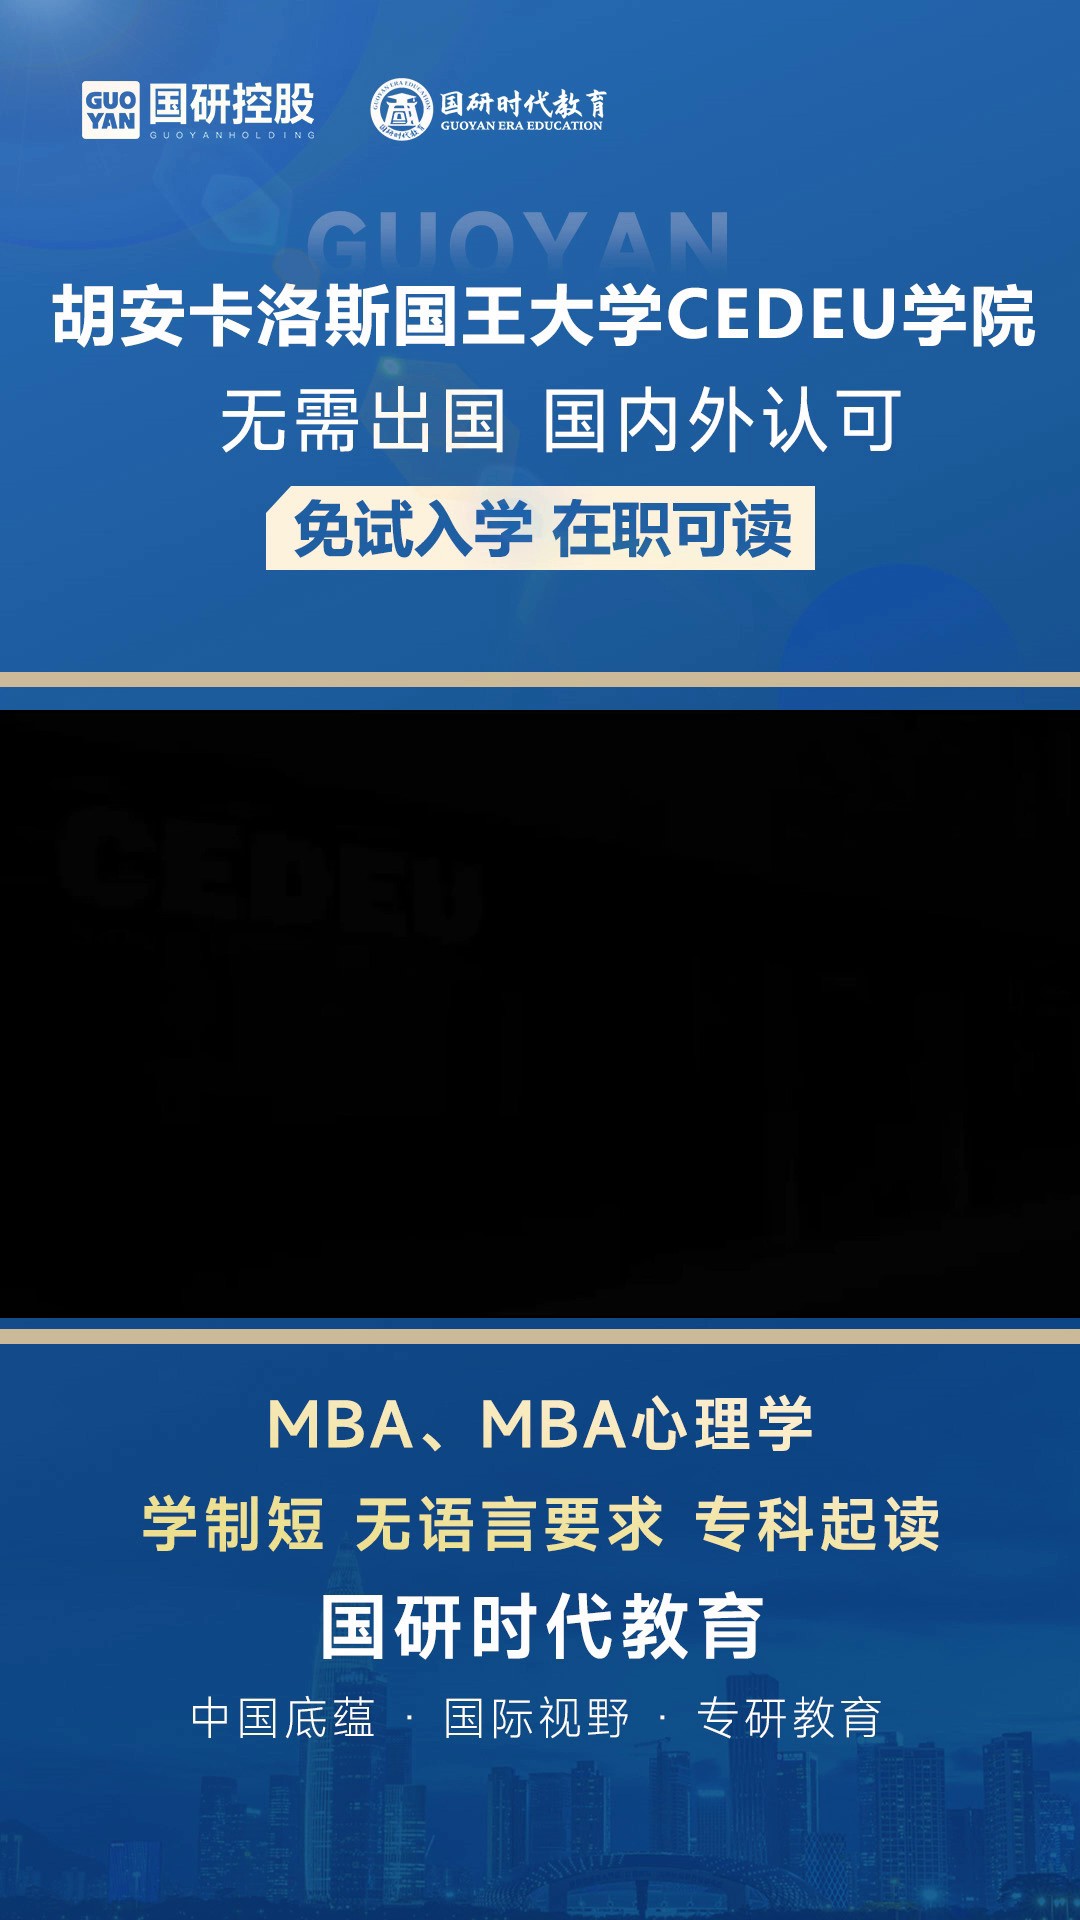 北京市免试入学MBA咨询,MBA